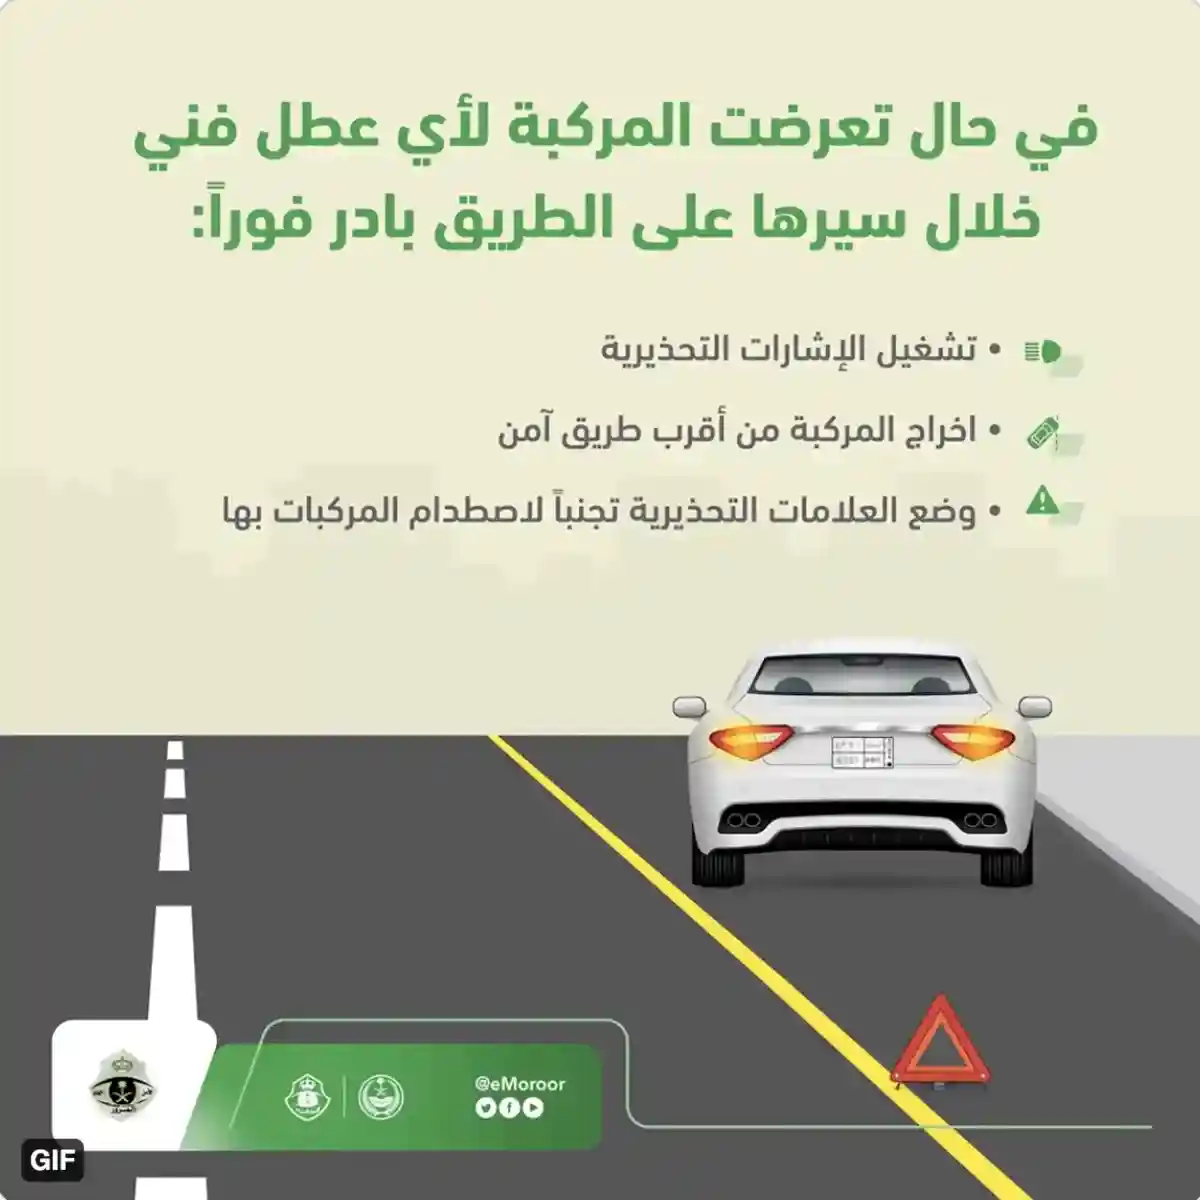 المرور السعودي يوضح خطوات السلامة لمن تتعرض سيارته للعطل في الطريق